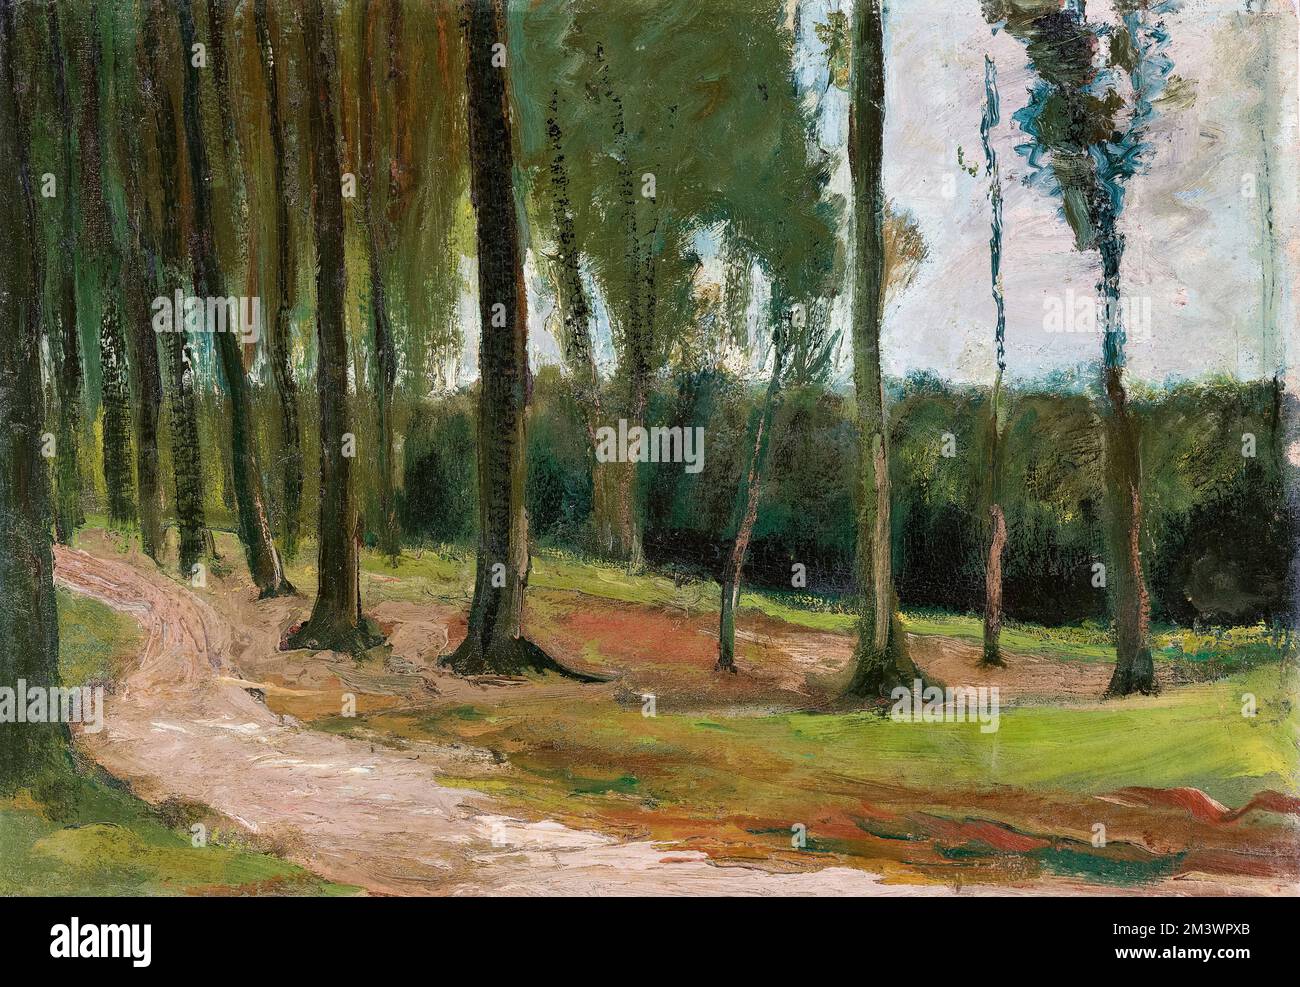 Vincent van Gogh, bord d'un bois (bord de forêt), peinture de paysage à l'huile sur toile, 1882 Banque D'Images